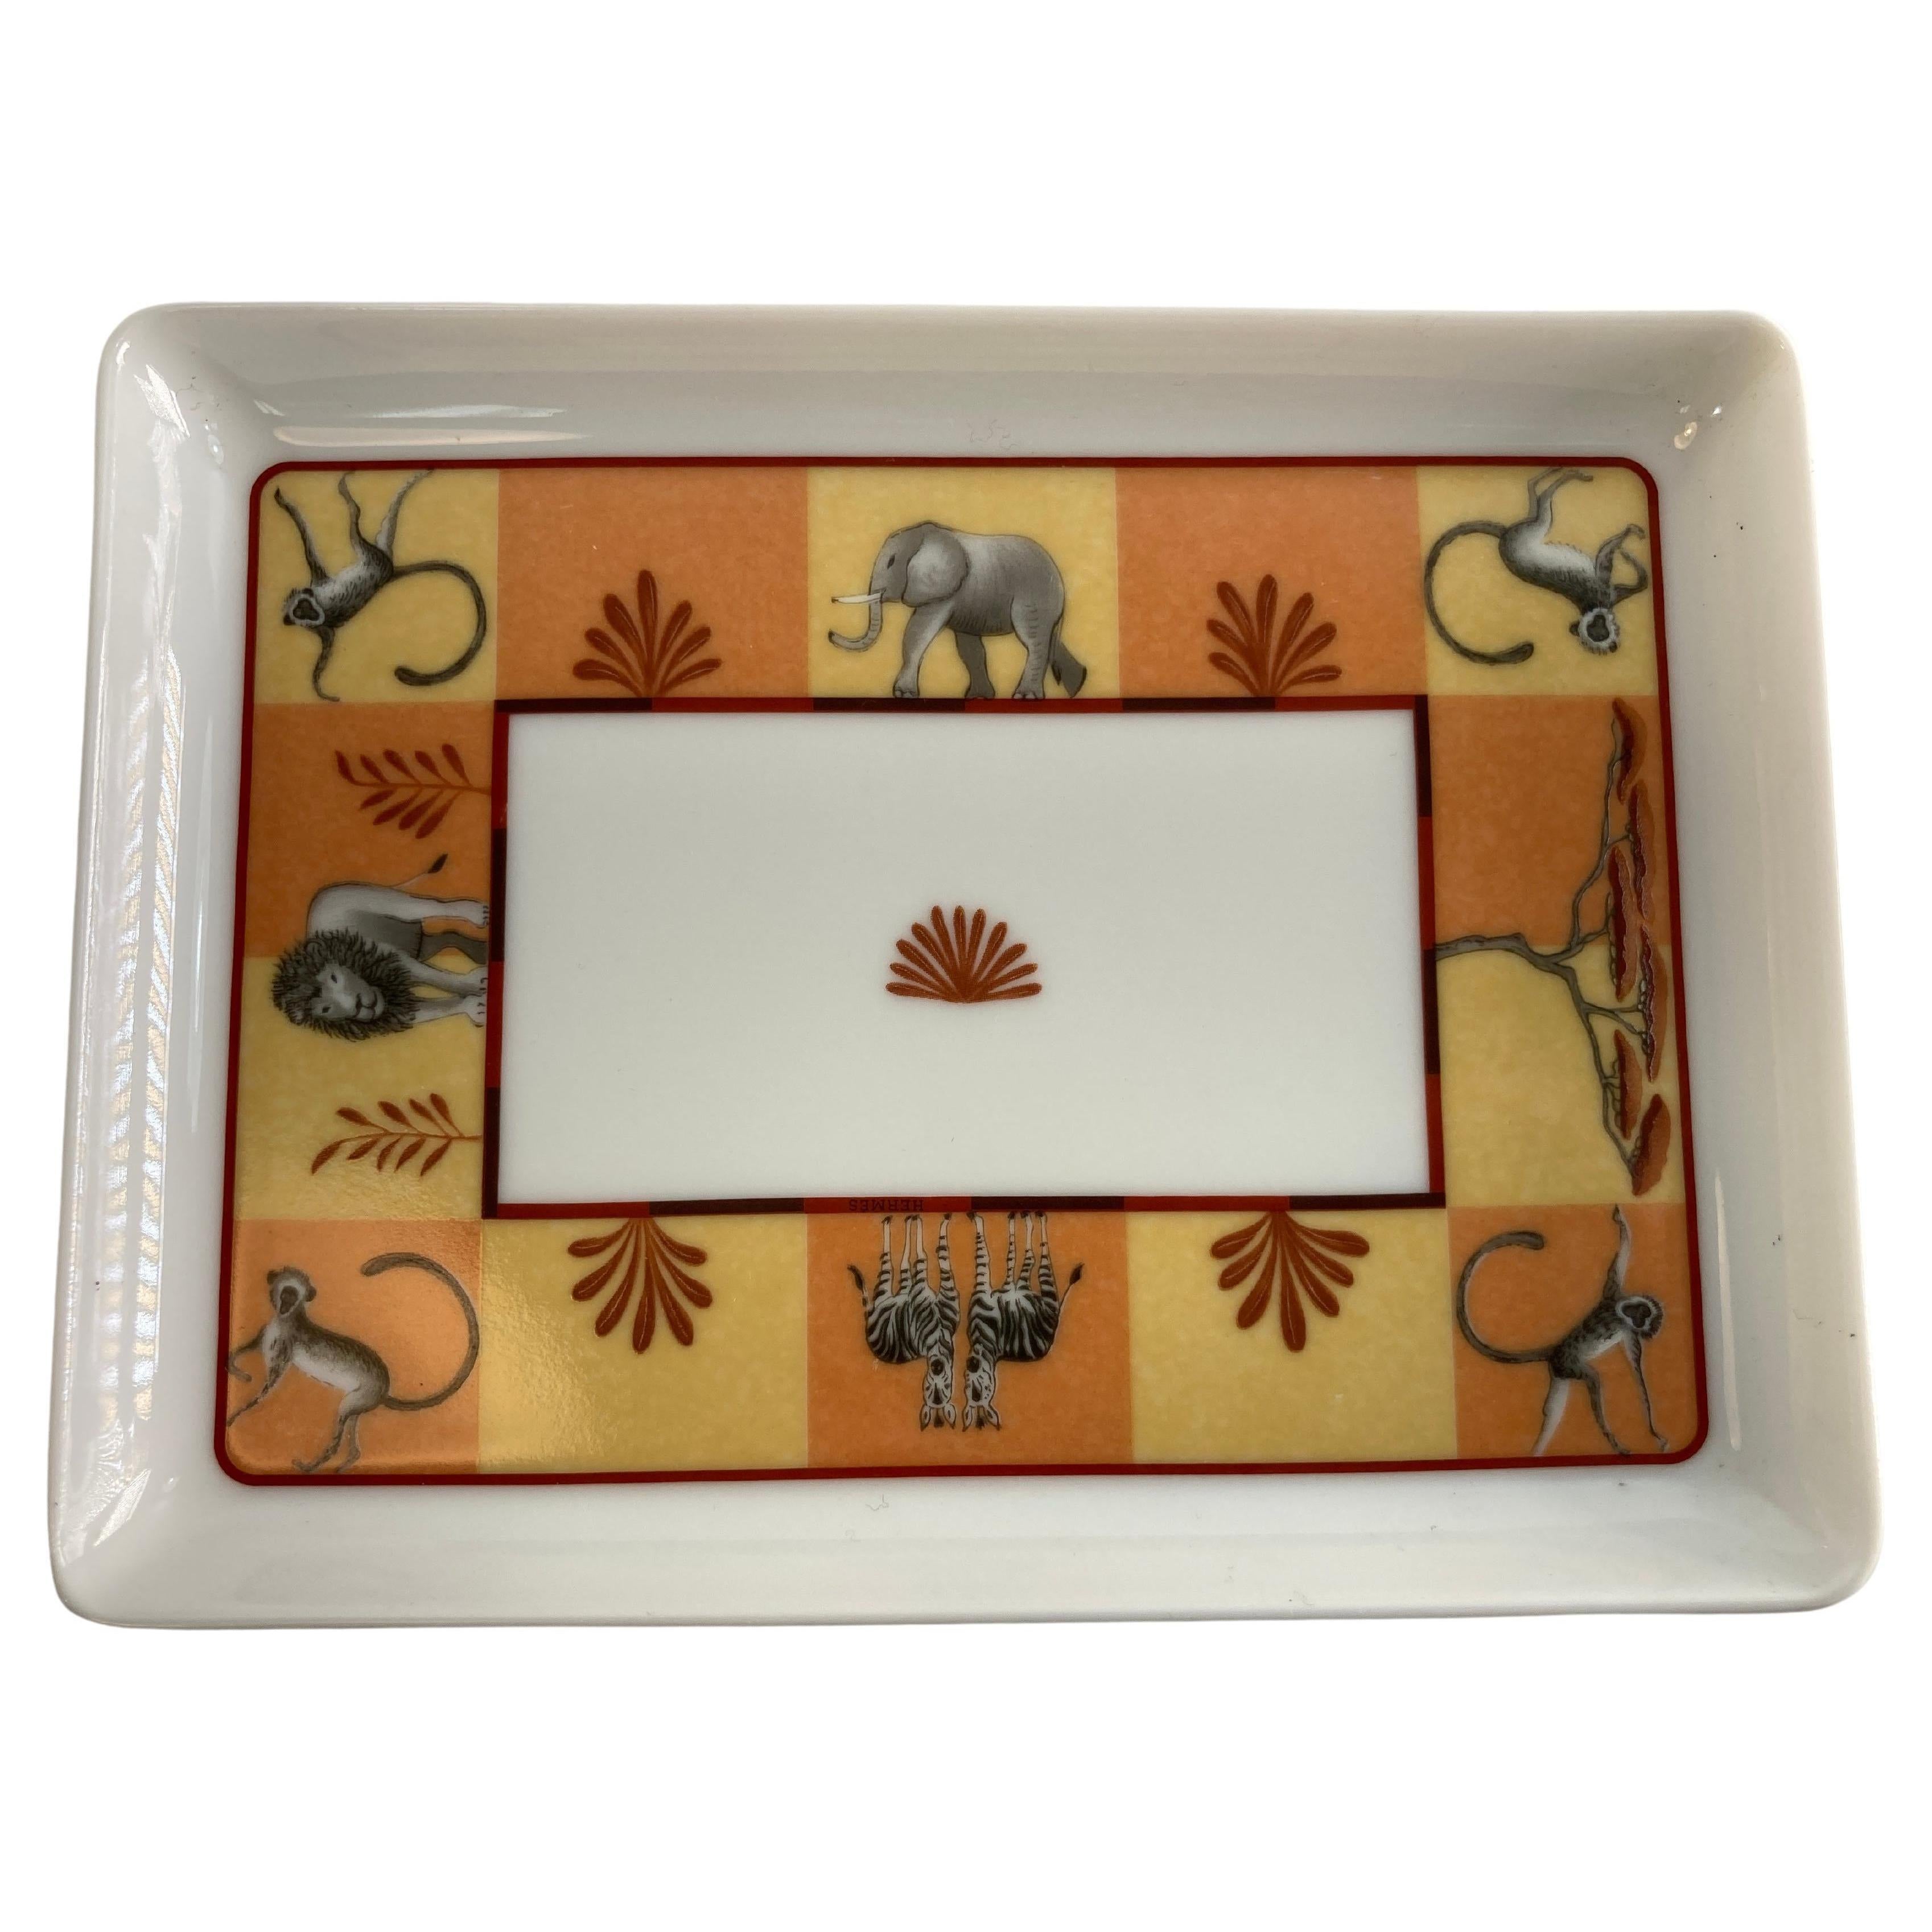 Hermes Porcelain Trinket Dish with Africa Orange Safari Design